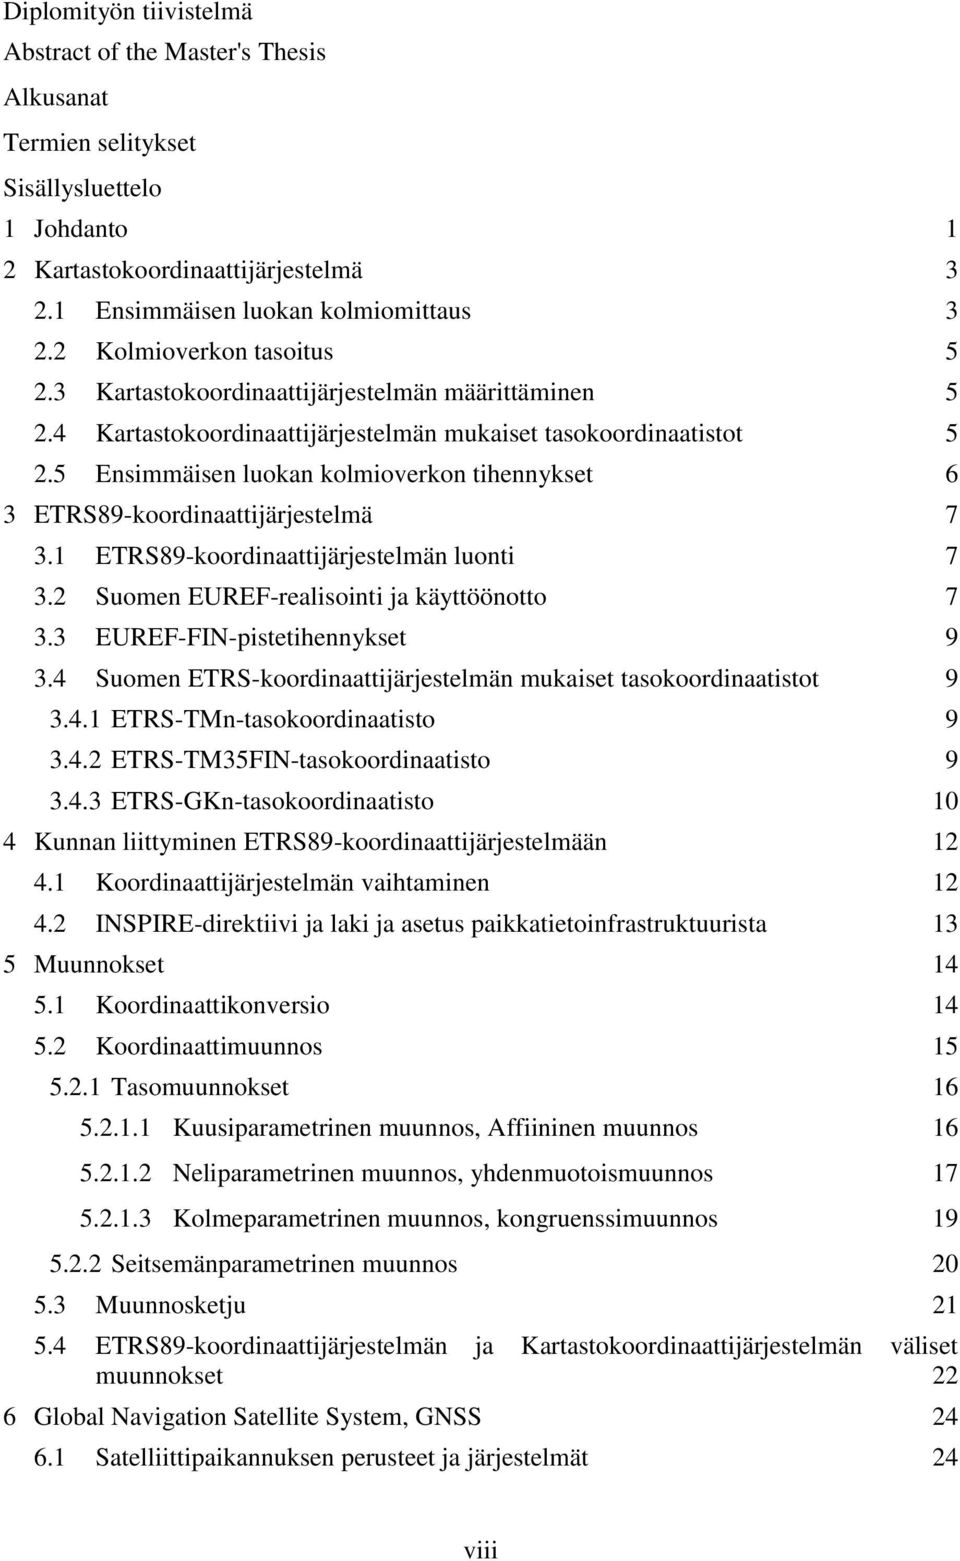 5 Ensimmäisen luokan kolmioverkon tihennykset 6 3 ETRS89-koordinaattijärjestelmä 7 3.1 ETRS89-koordinaattijärjestelmän luonti 7 3.2 Suomen EUREF-realisointi ja käyttöönotto 7 3.